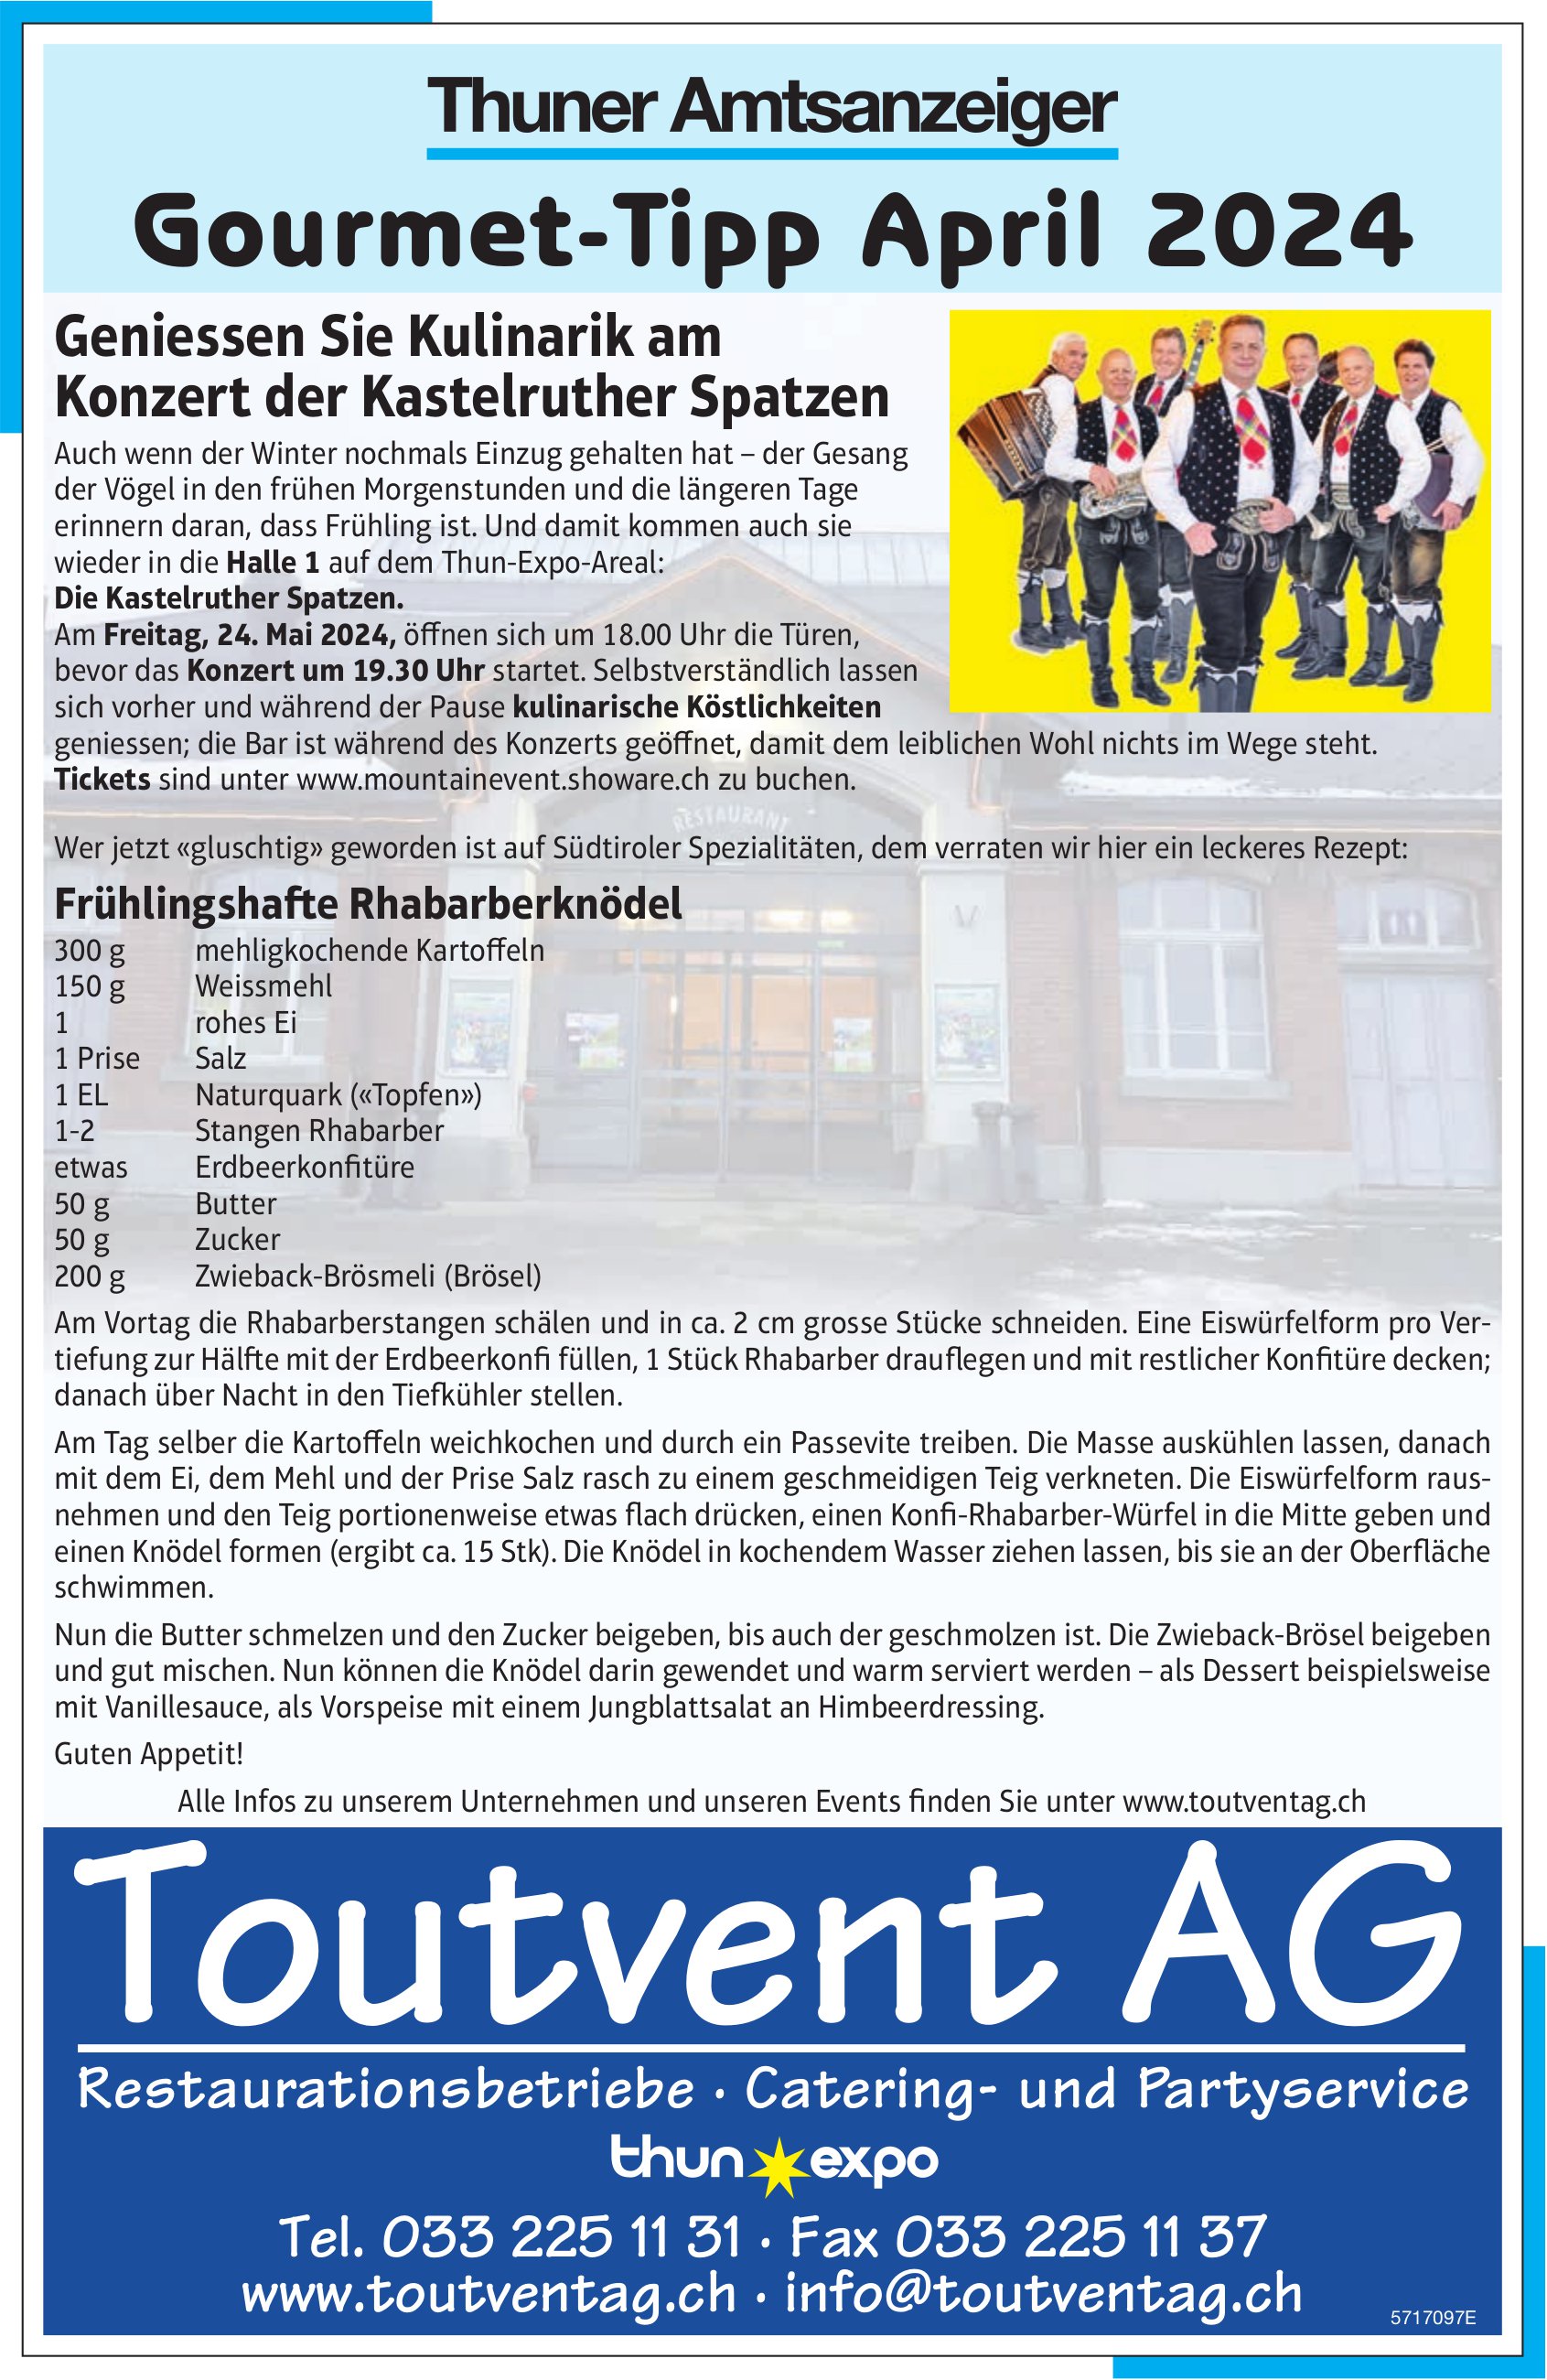 Toutvent AG / Thuner Amtsanzeiger, Gourmet-Tipp April 2024